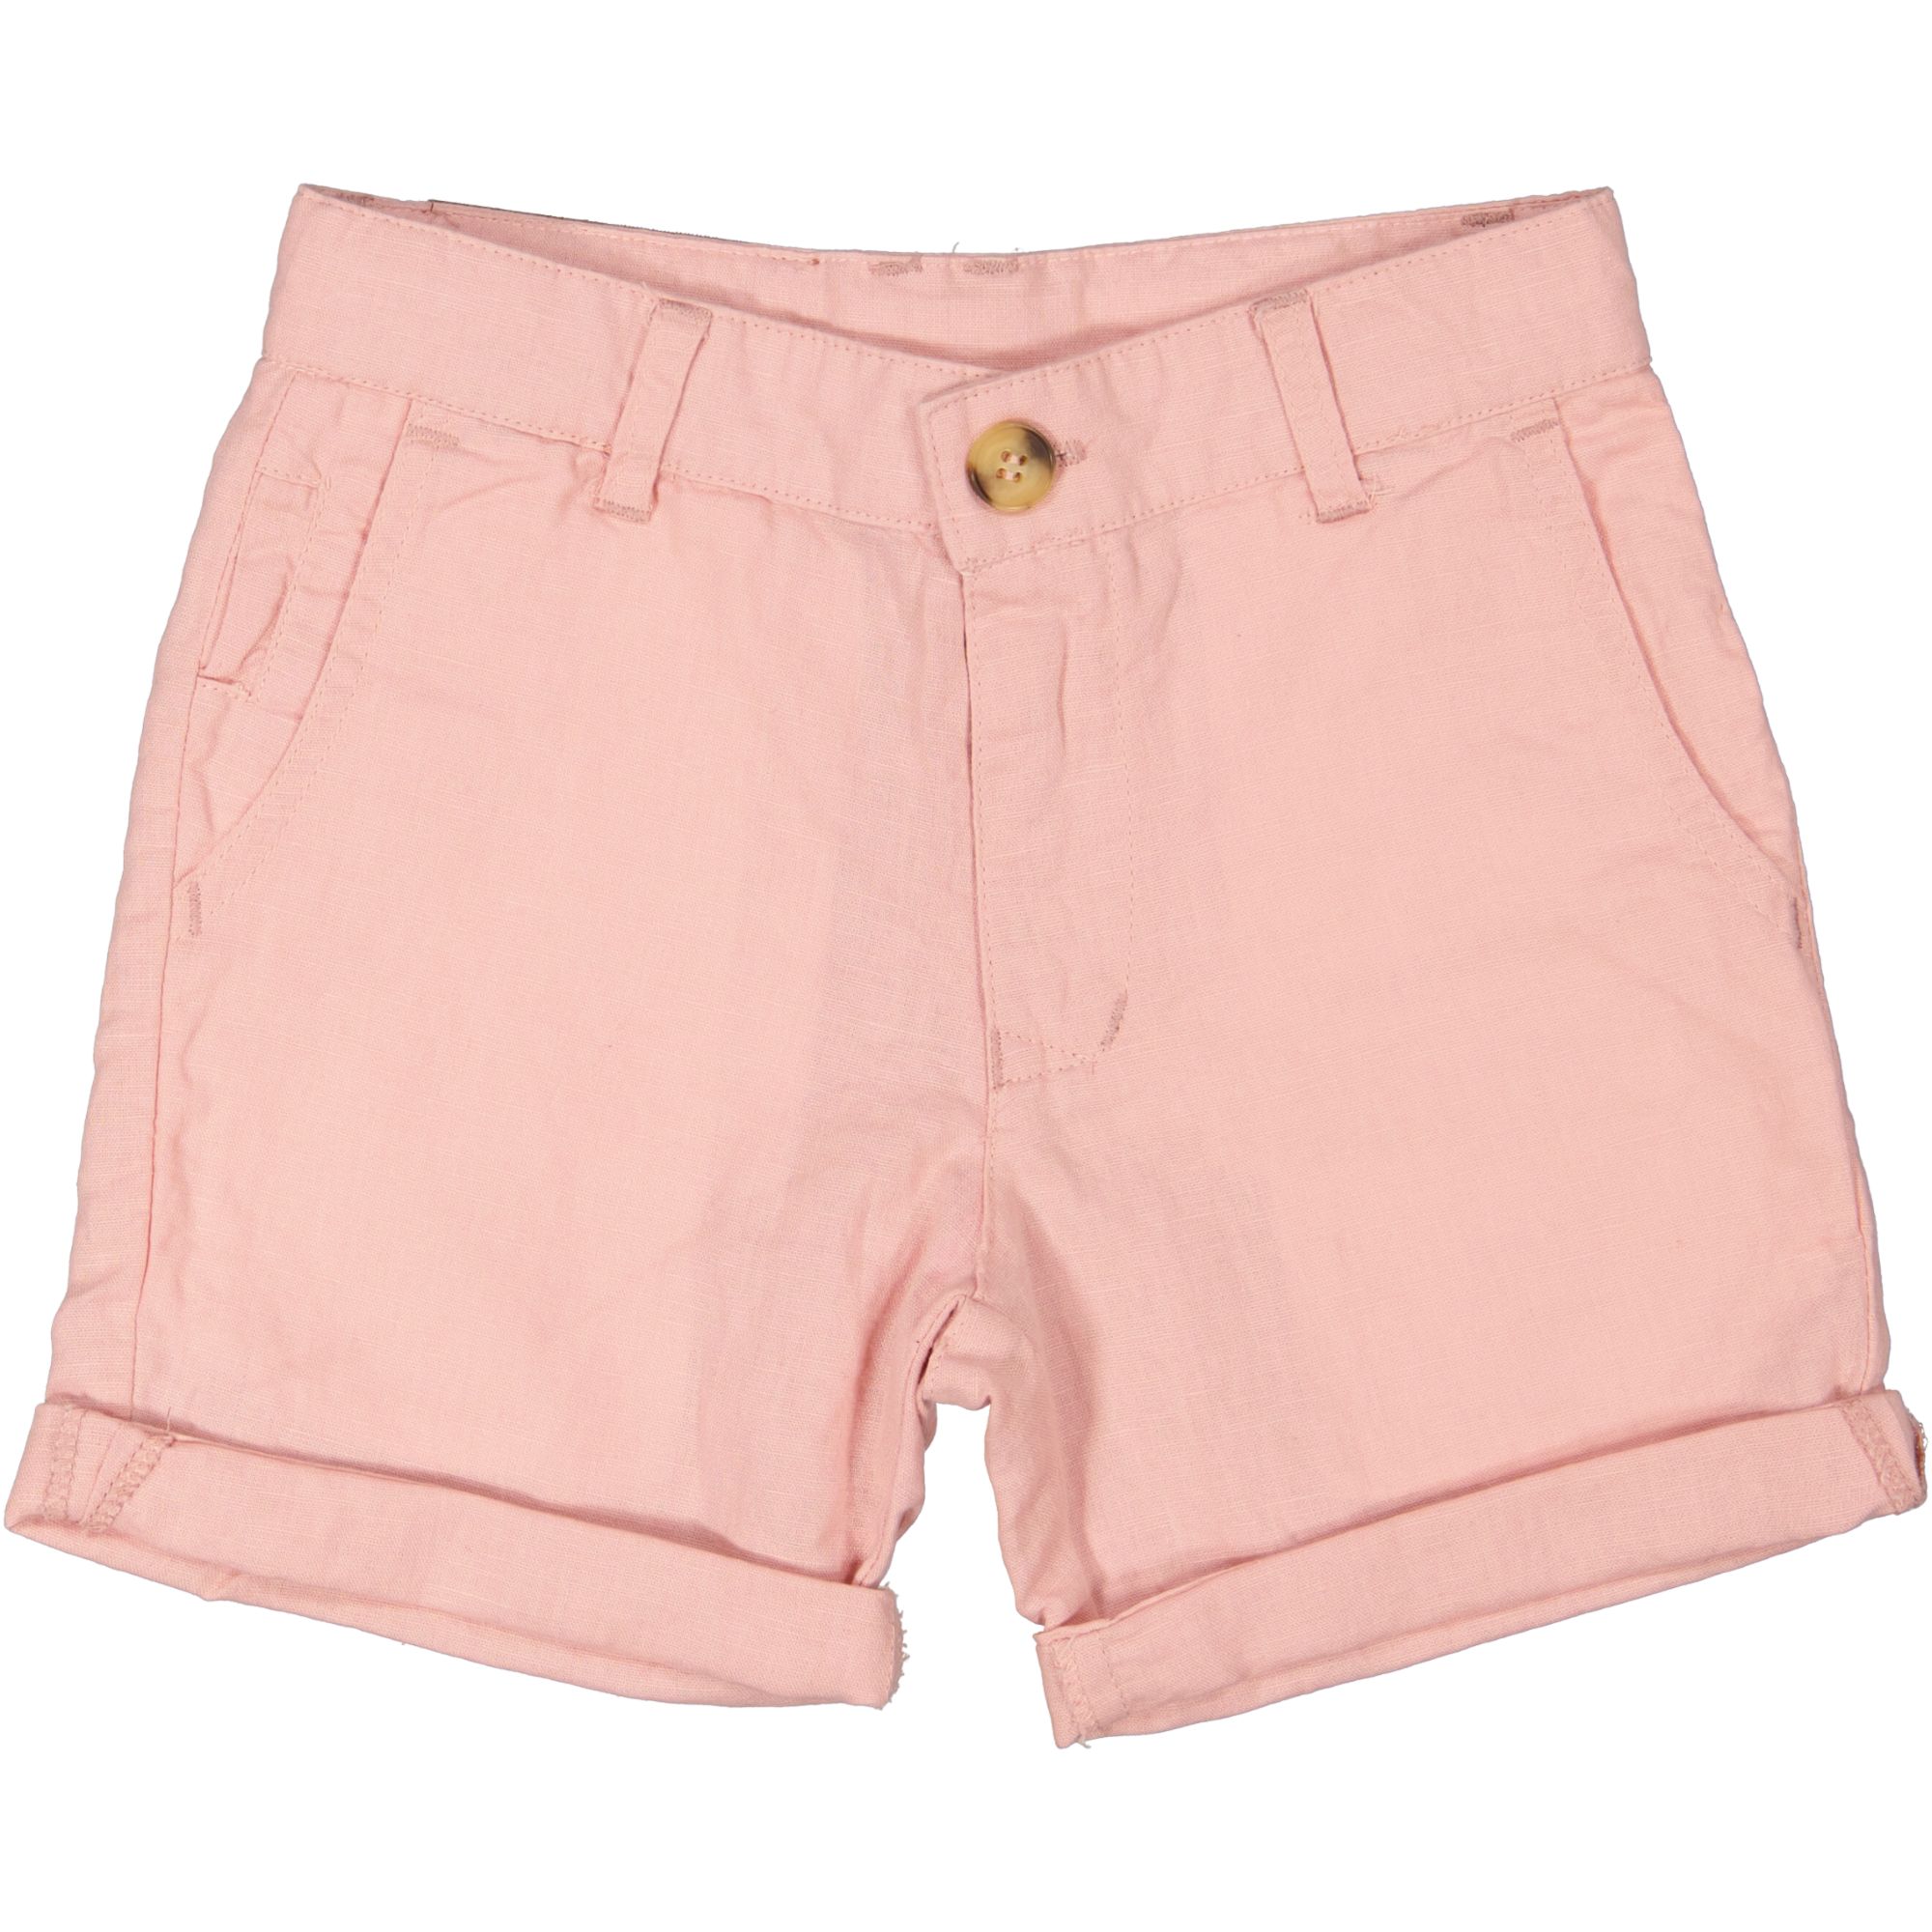 Linnen shorts teen Old pink 57